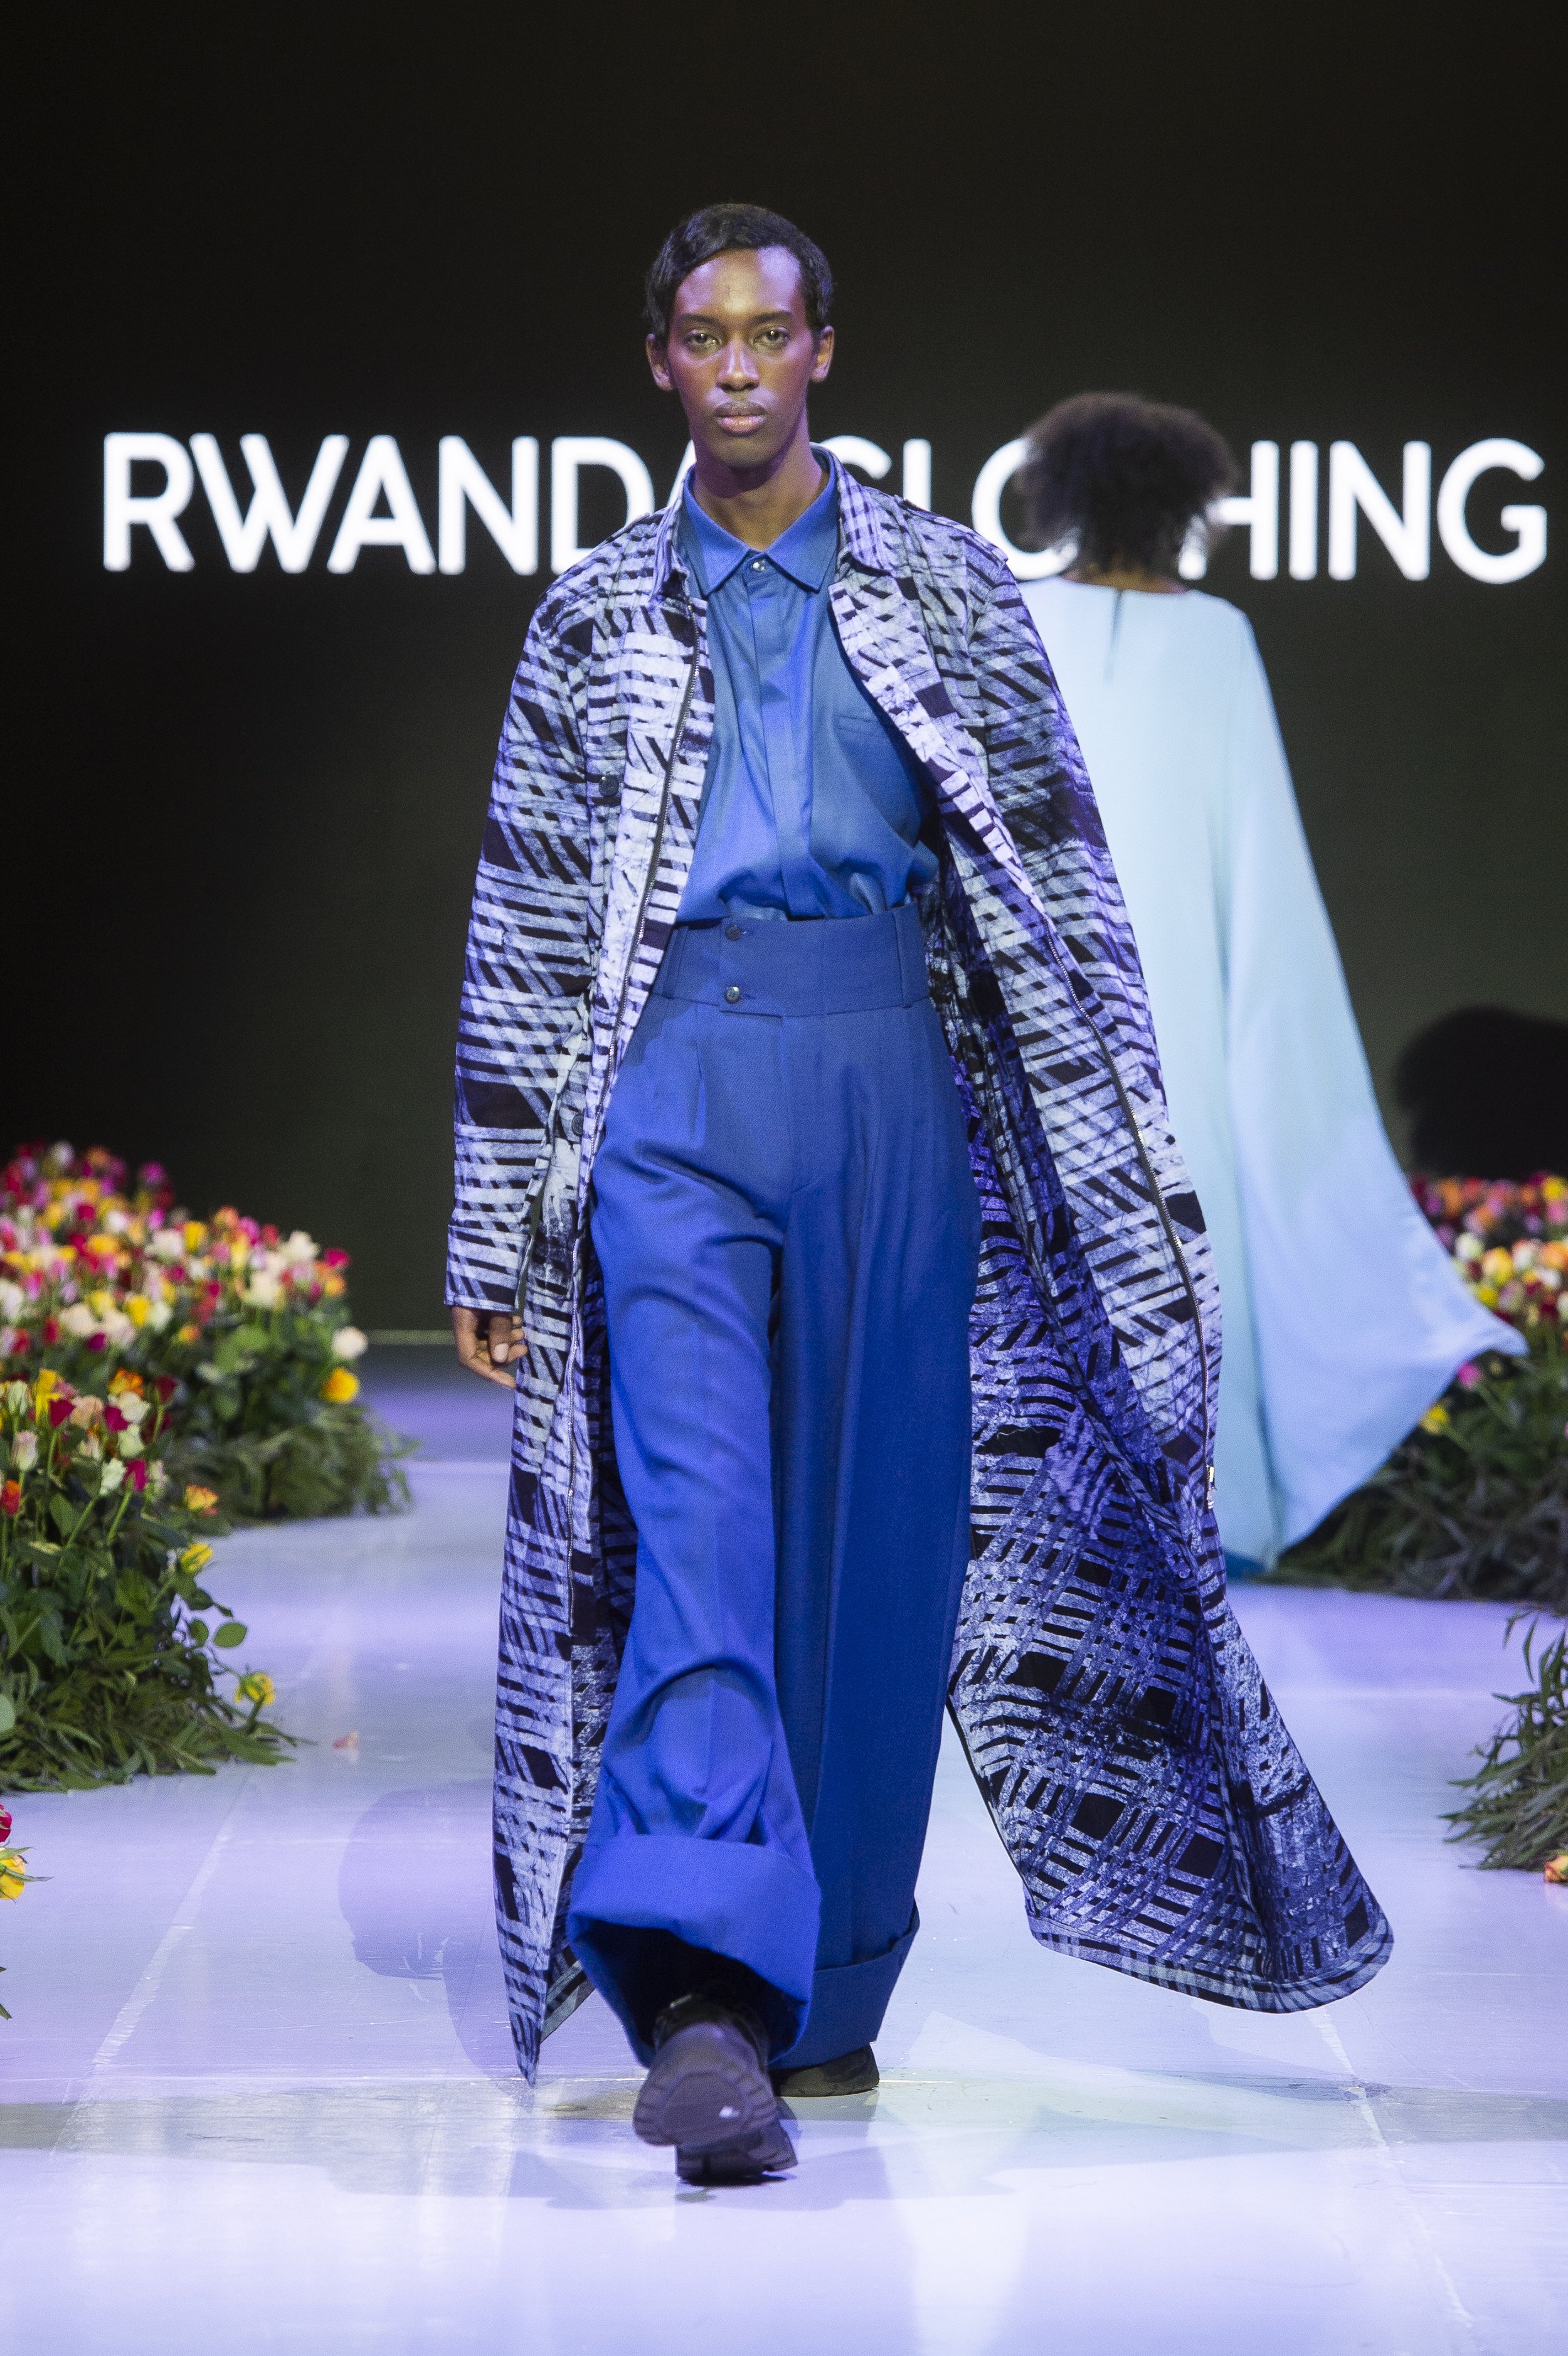 Rwanda Clothing